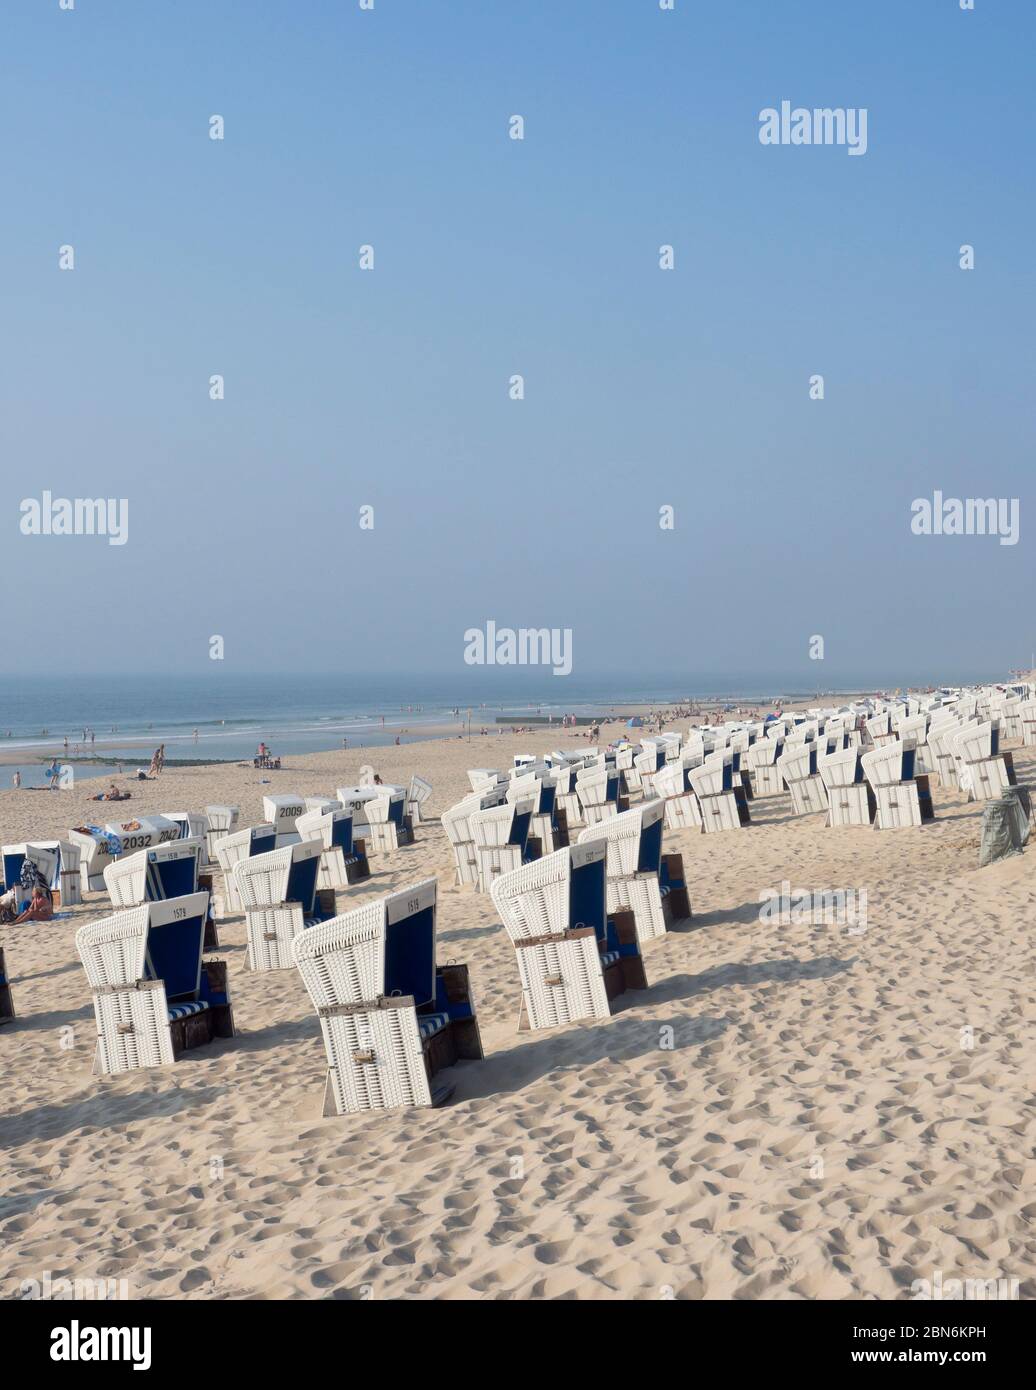 Strandkorb le sedie da spiaggia tedesche, i villeggianti e l'orizzonte lontano lungo i chilometri di spiaggia a Westerland Sylt, in Schleswig-Holstein Germania Foto Stock